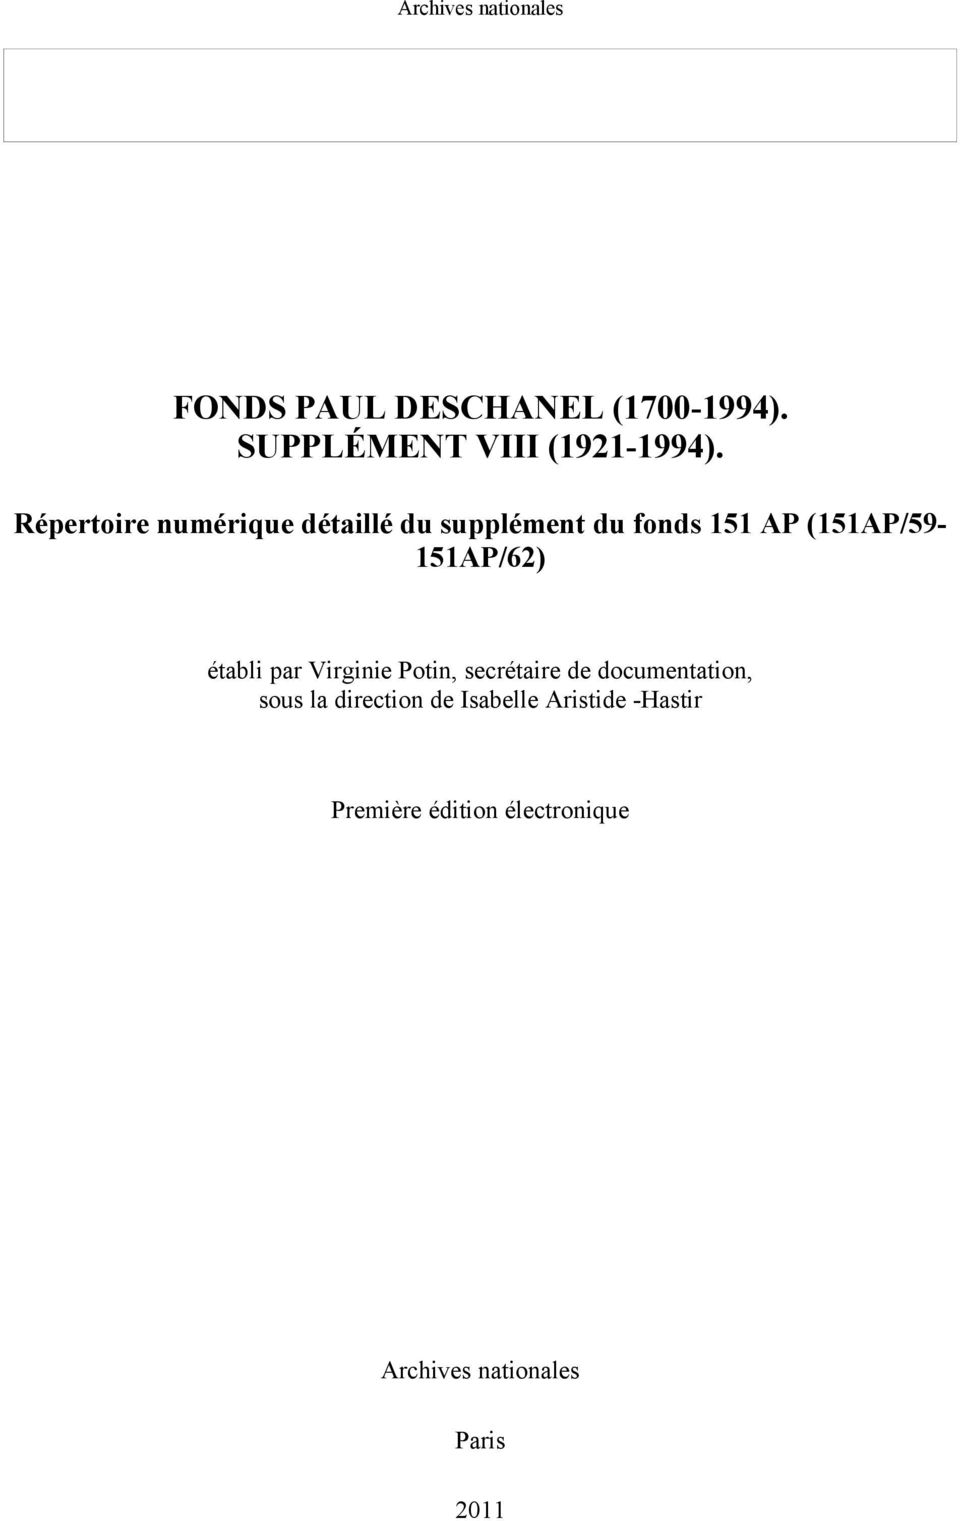 Répertoire numérique détaillé du supplément du fonds 151 AP (151AP/59-151AP/62) établi par Virginie